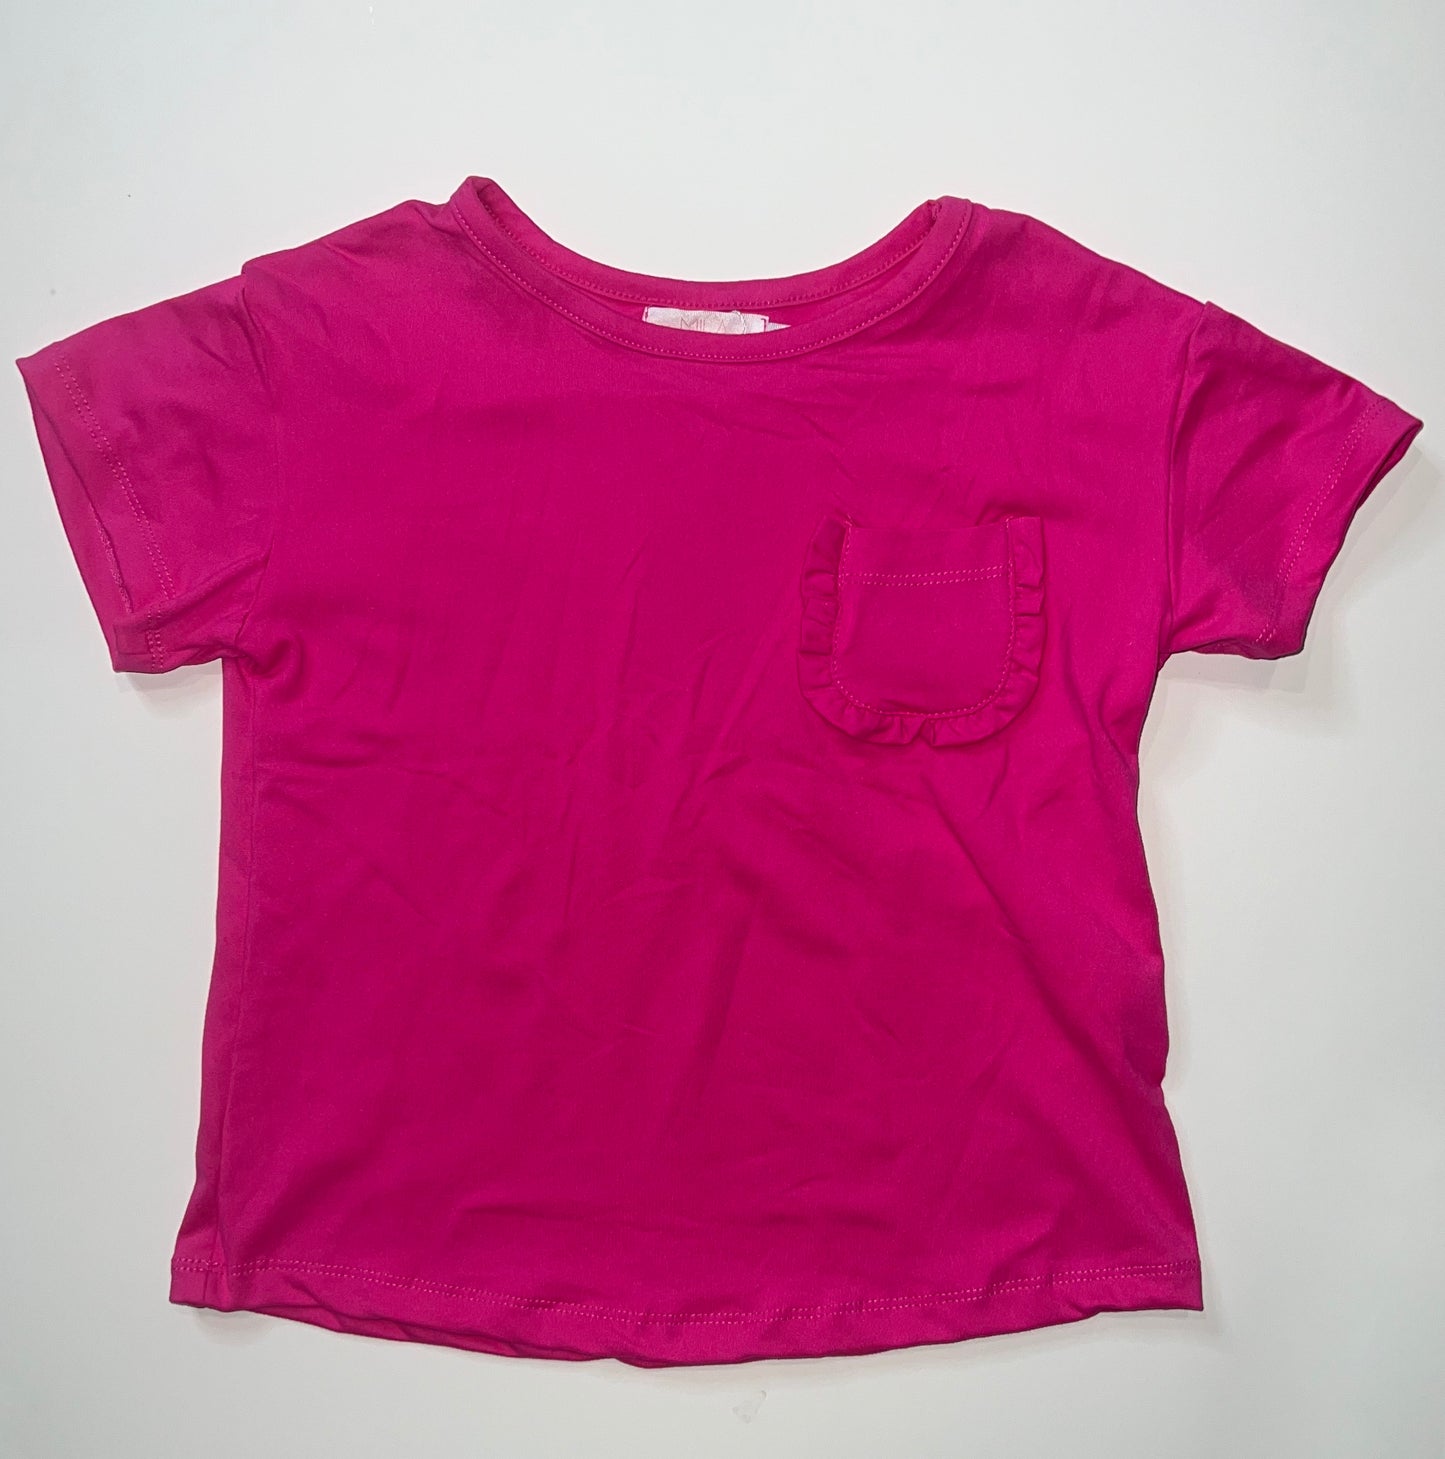 Hot pink pocket tshirt